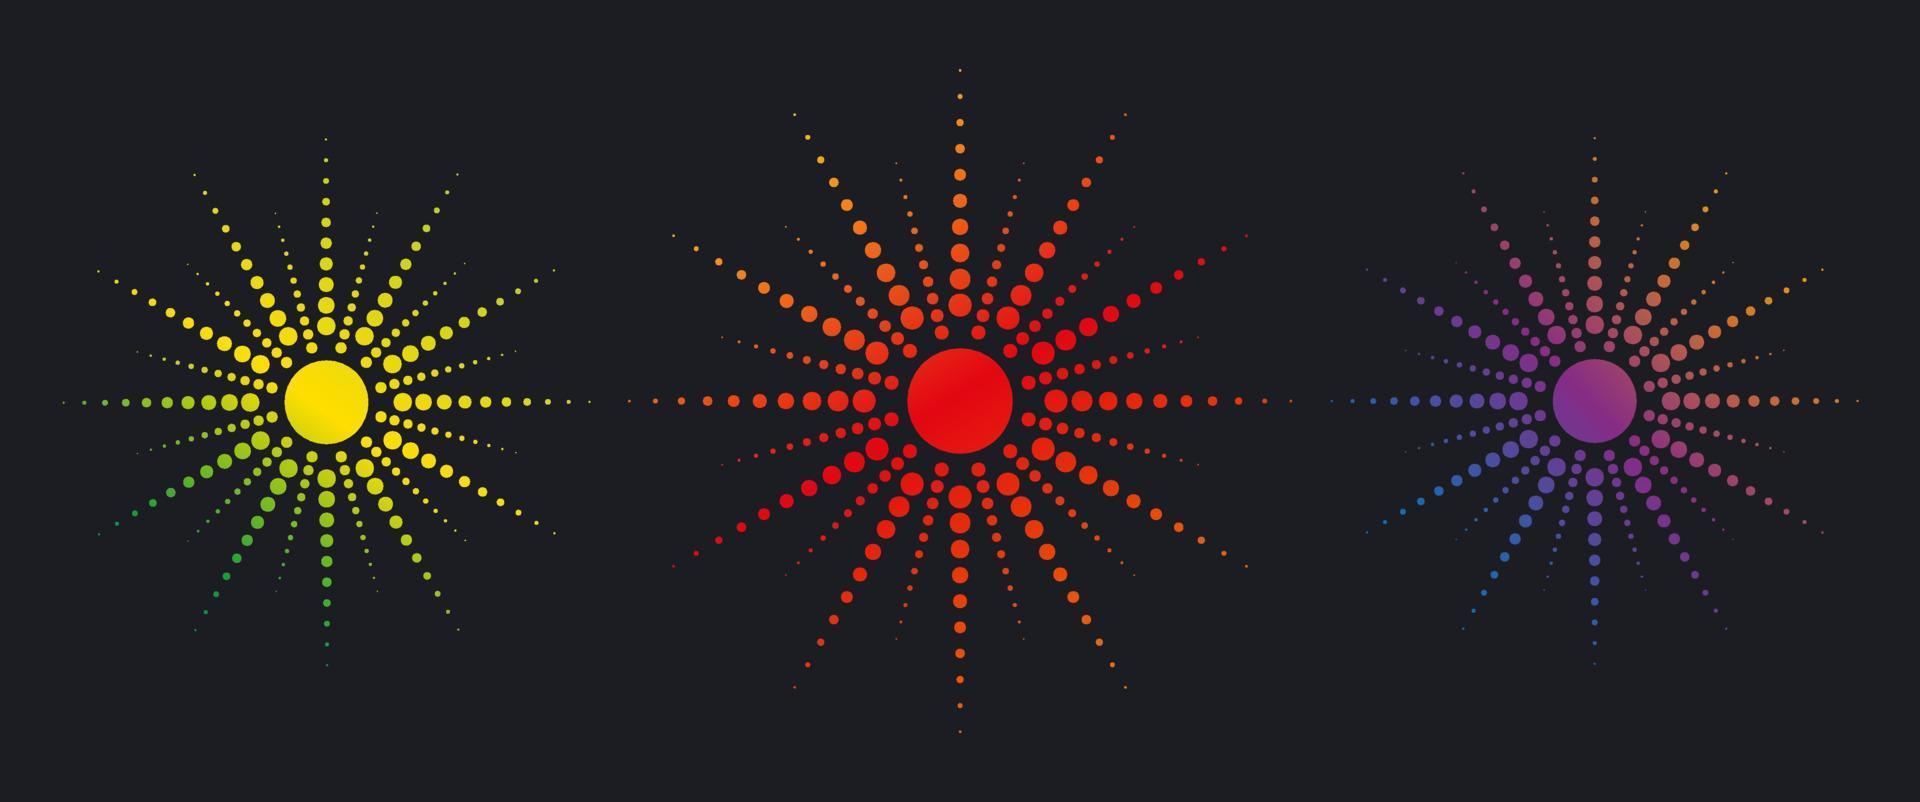 rayos de sol punteados, colección set. fondo de explosión de sol vintage, diseño de logotipo, efecto de semitono degradado colorido, ilustración vectorial aislada en fondo negro vector